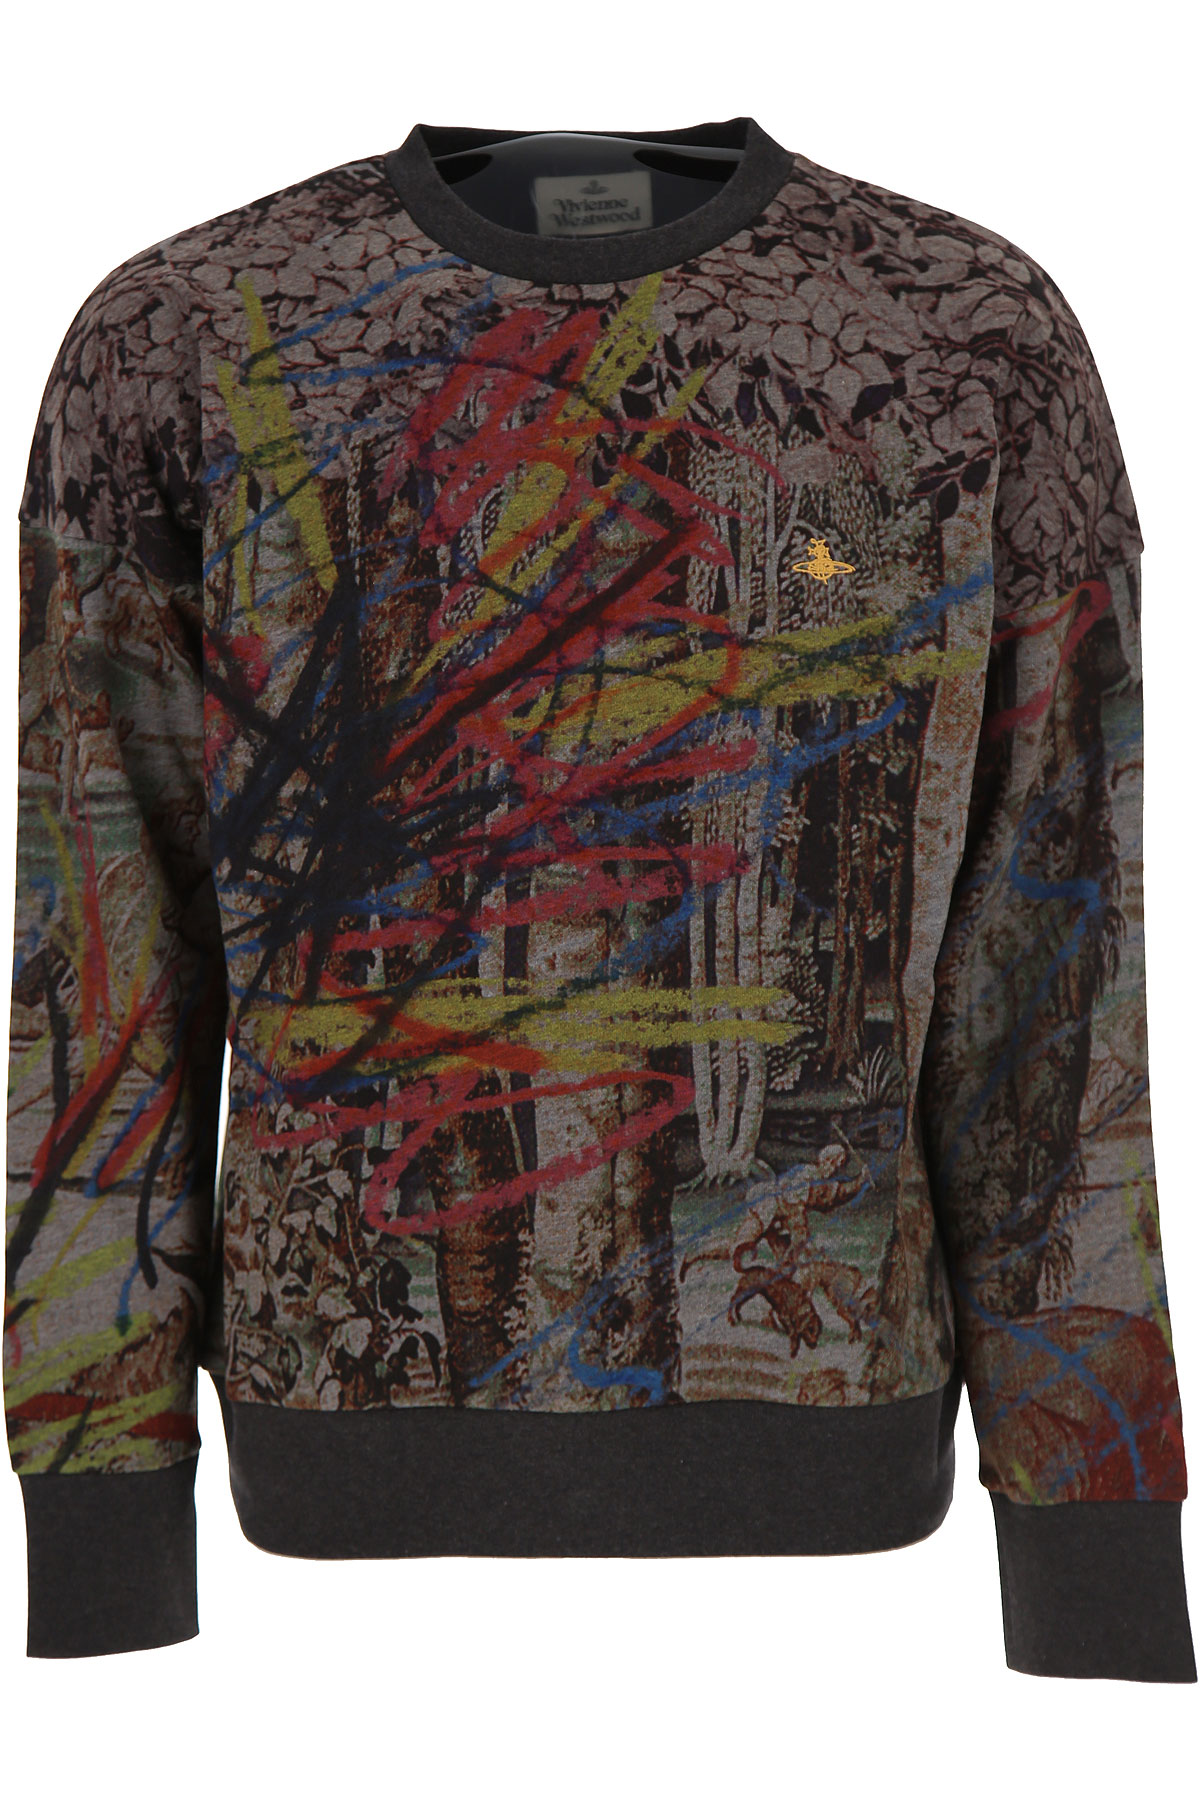 Vivienne Westwood Sweatshirt für Herren, Kapuzenpulli, Hoodie, Sweats Günstig im Sale, Anthrazit, Baumwolle, 2017, M XL